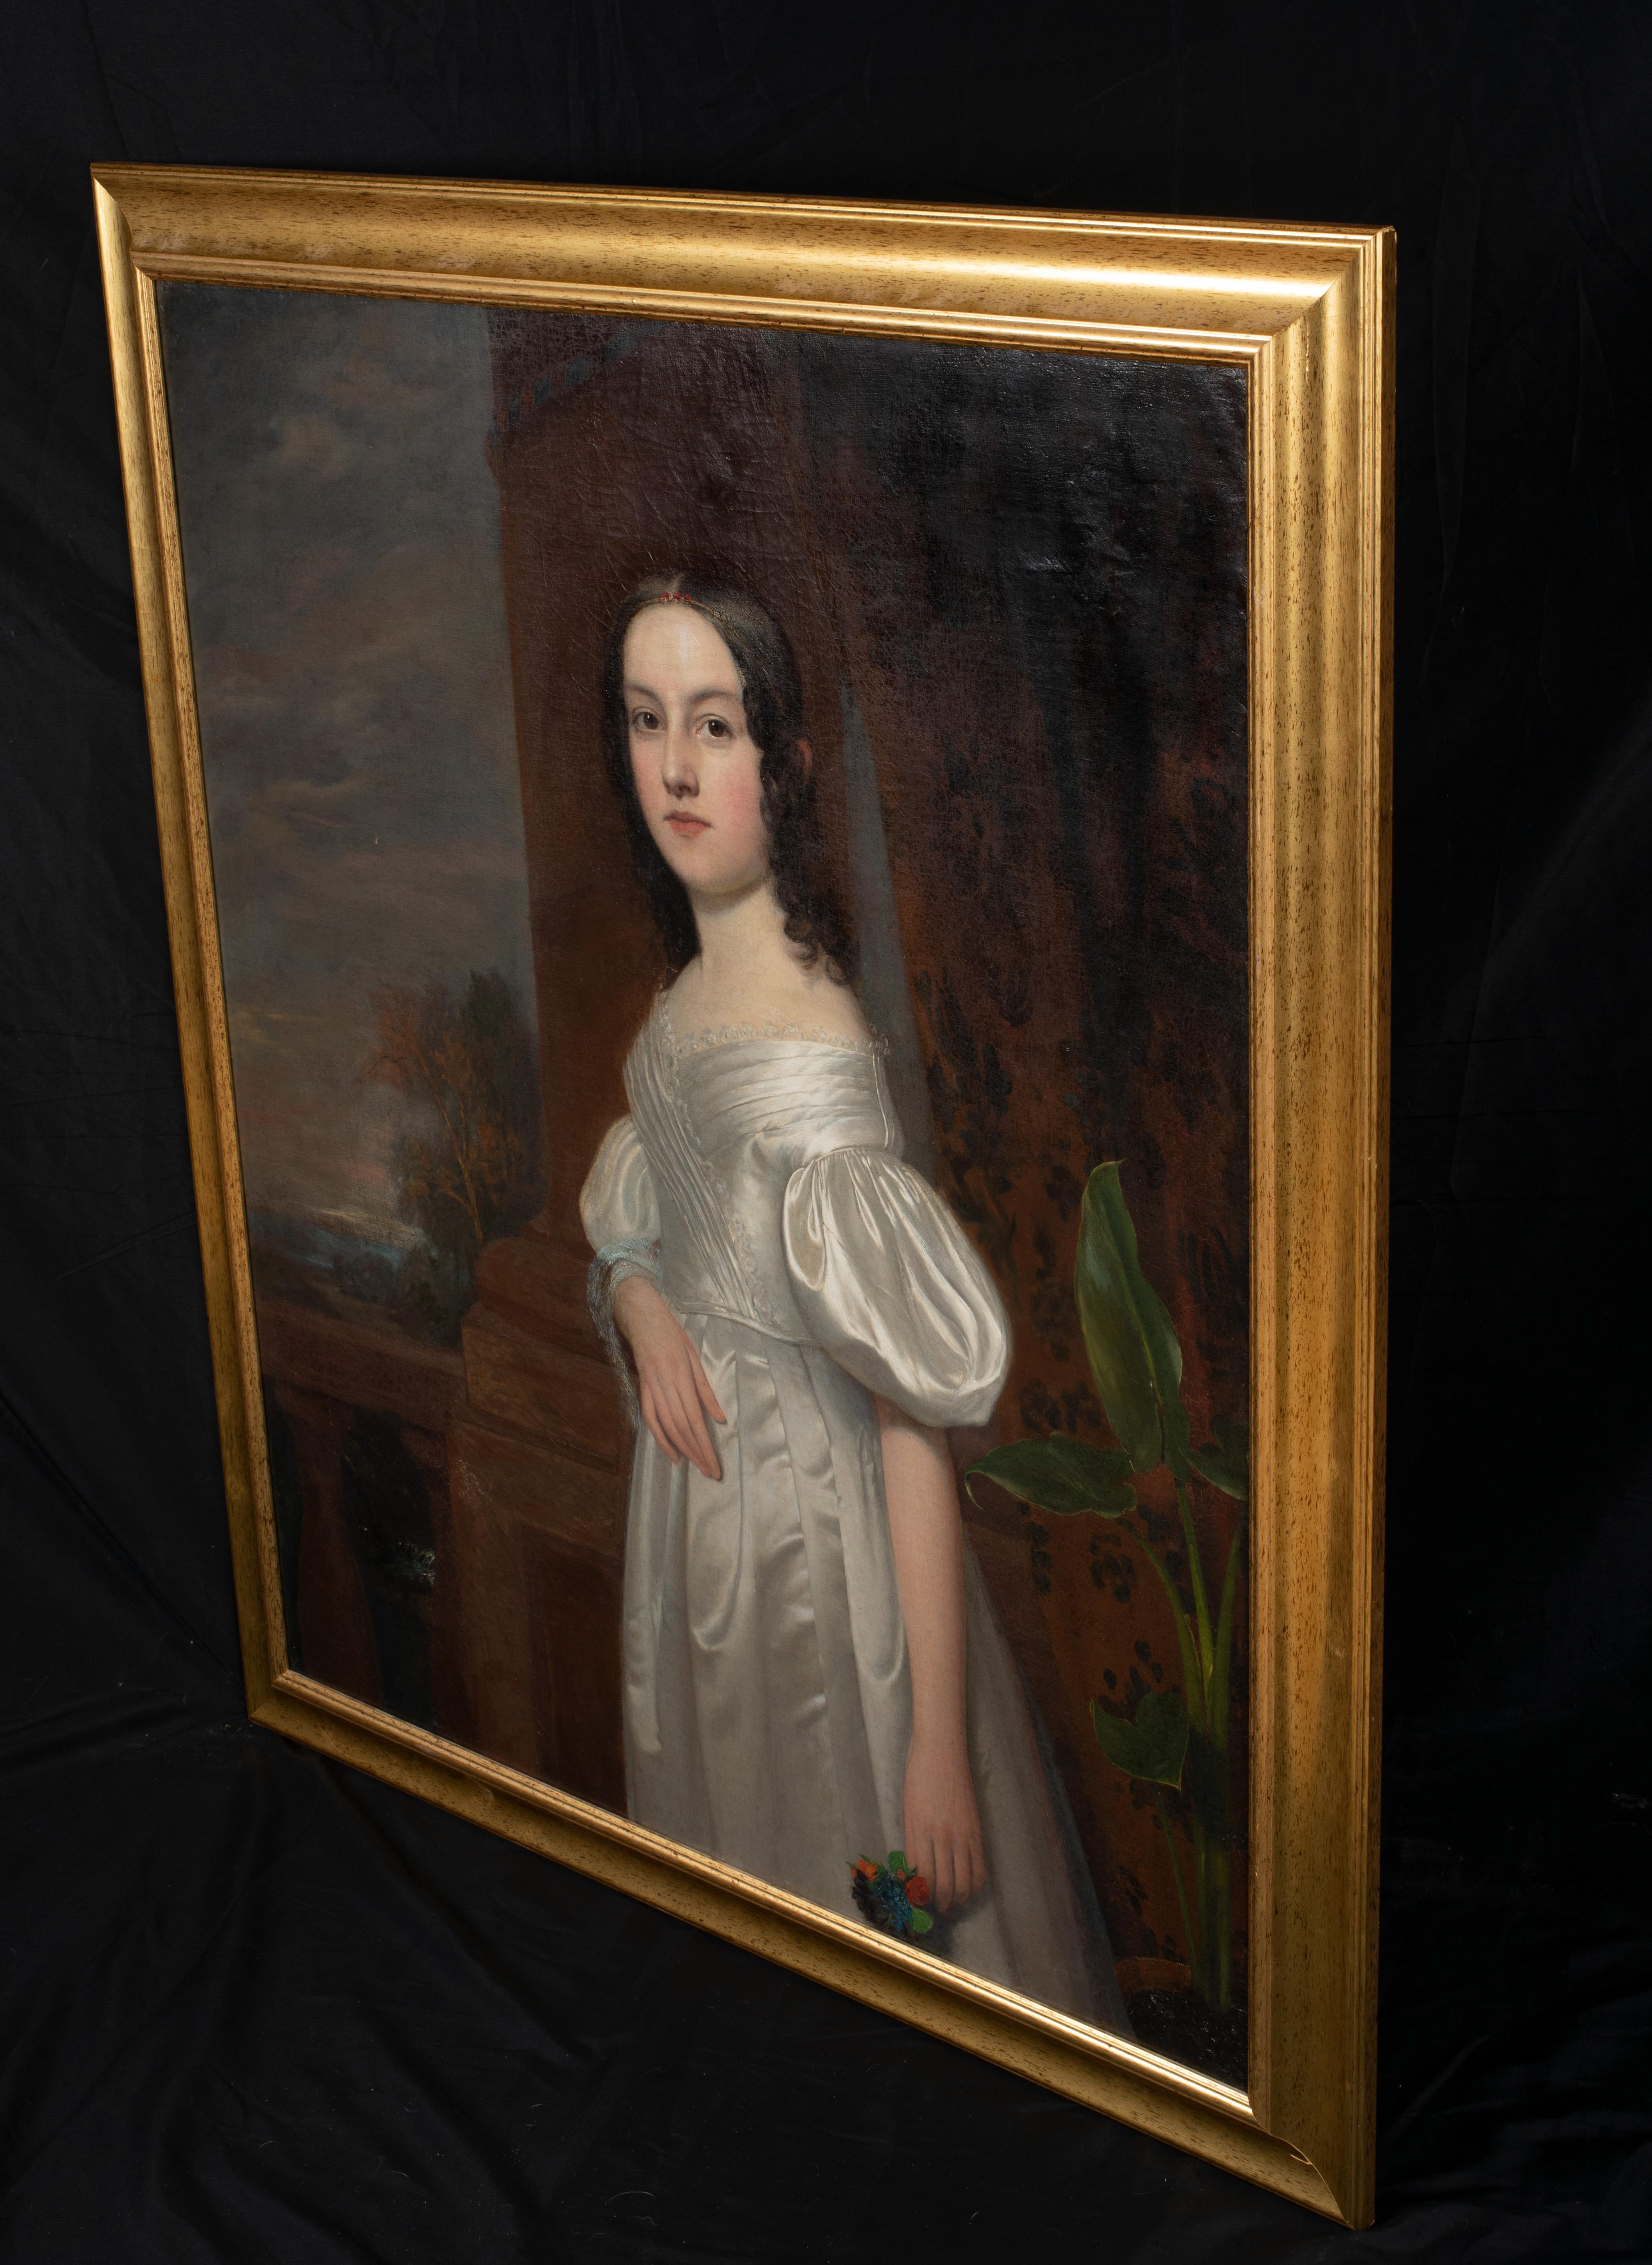 1800 portrait paintings